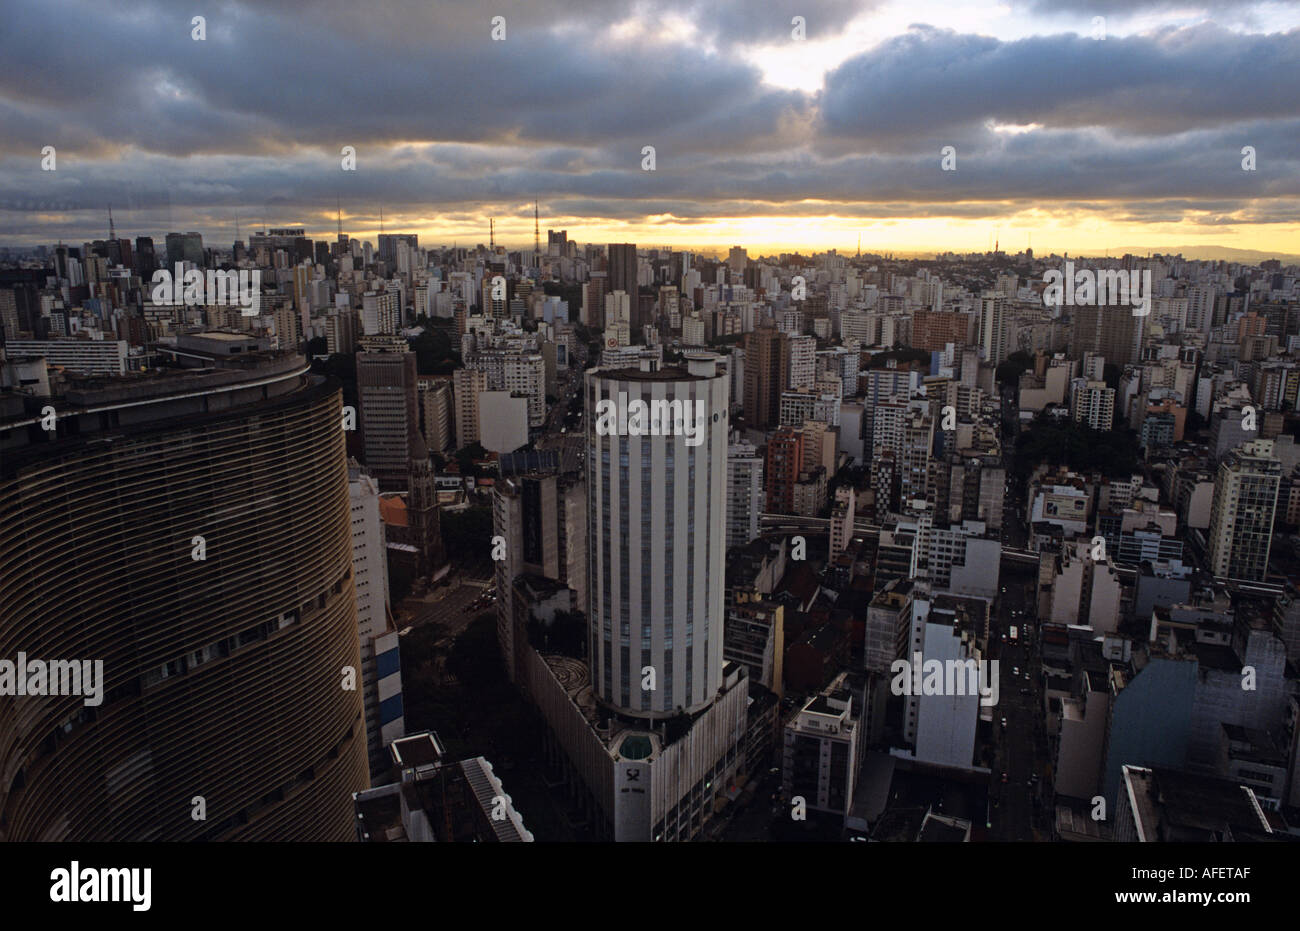 Skyline of Sao Paulo with Edificio Copan by Oscar Niemeyer Brazil Stock Photo